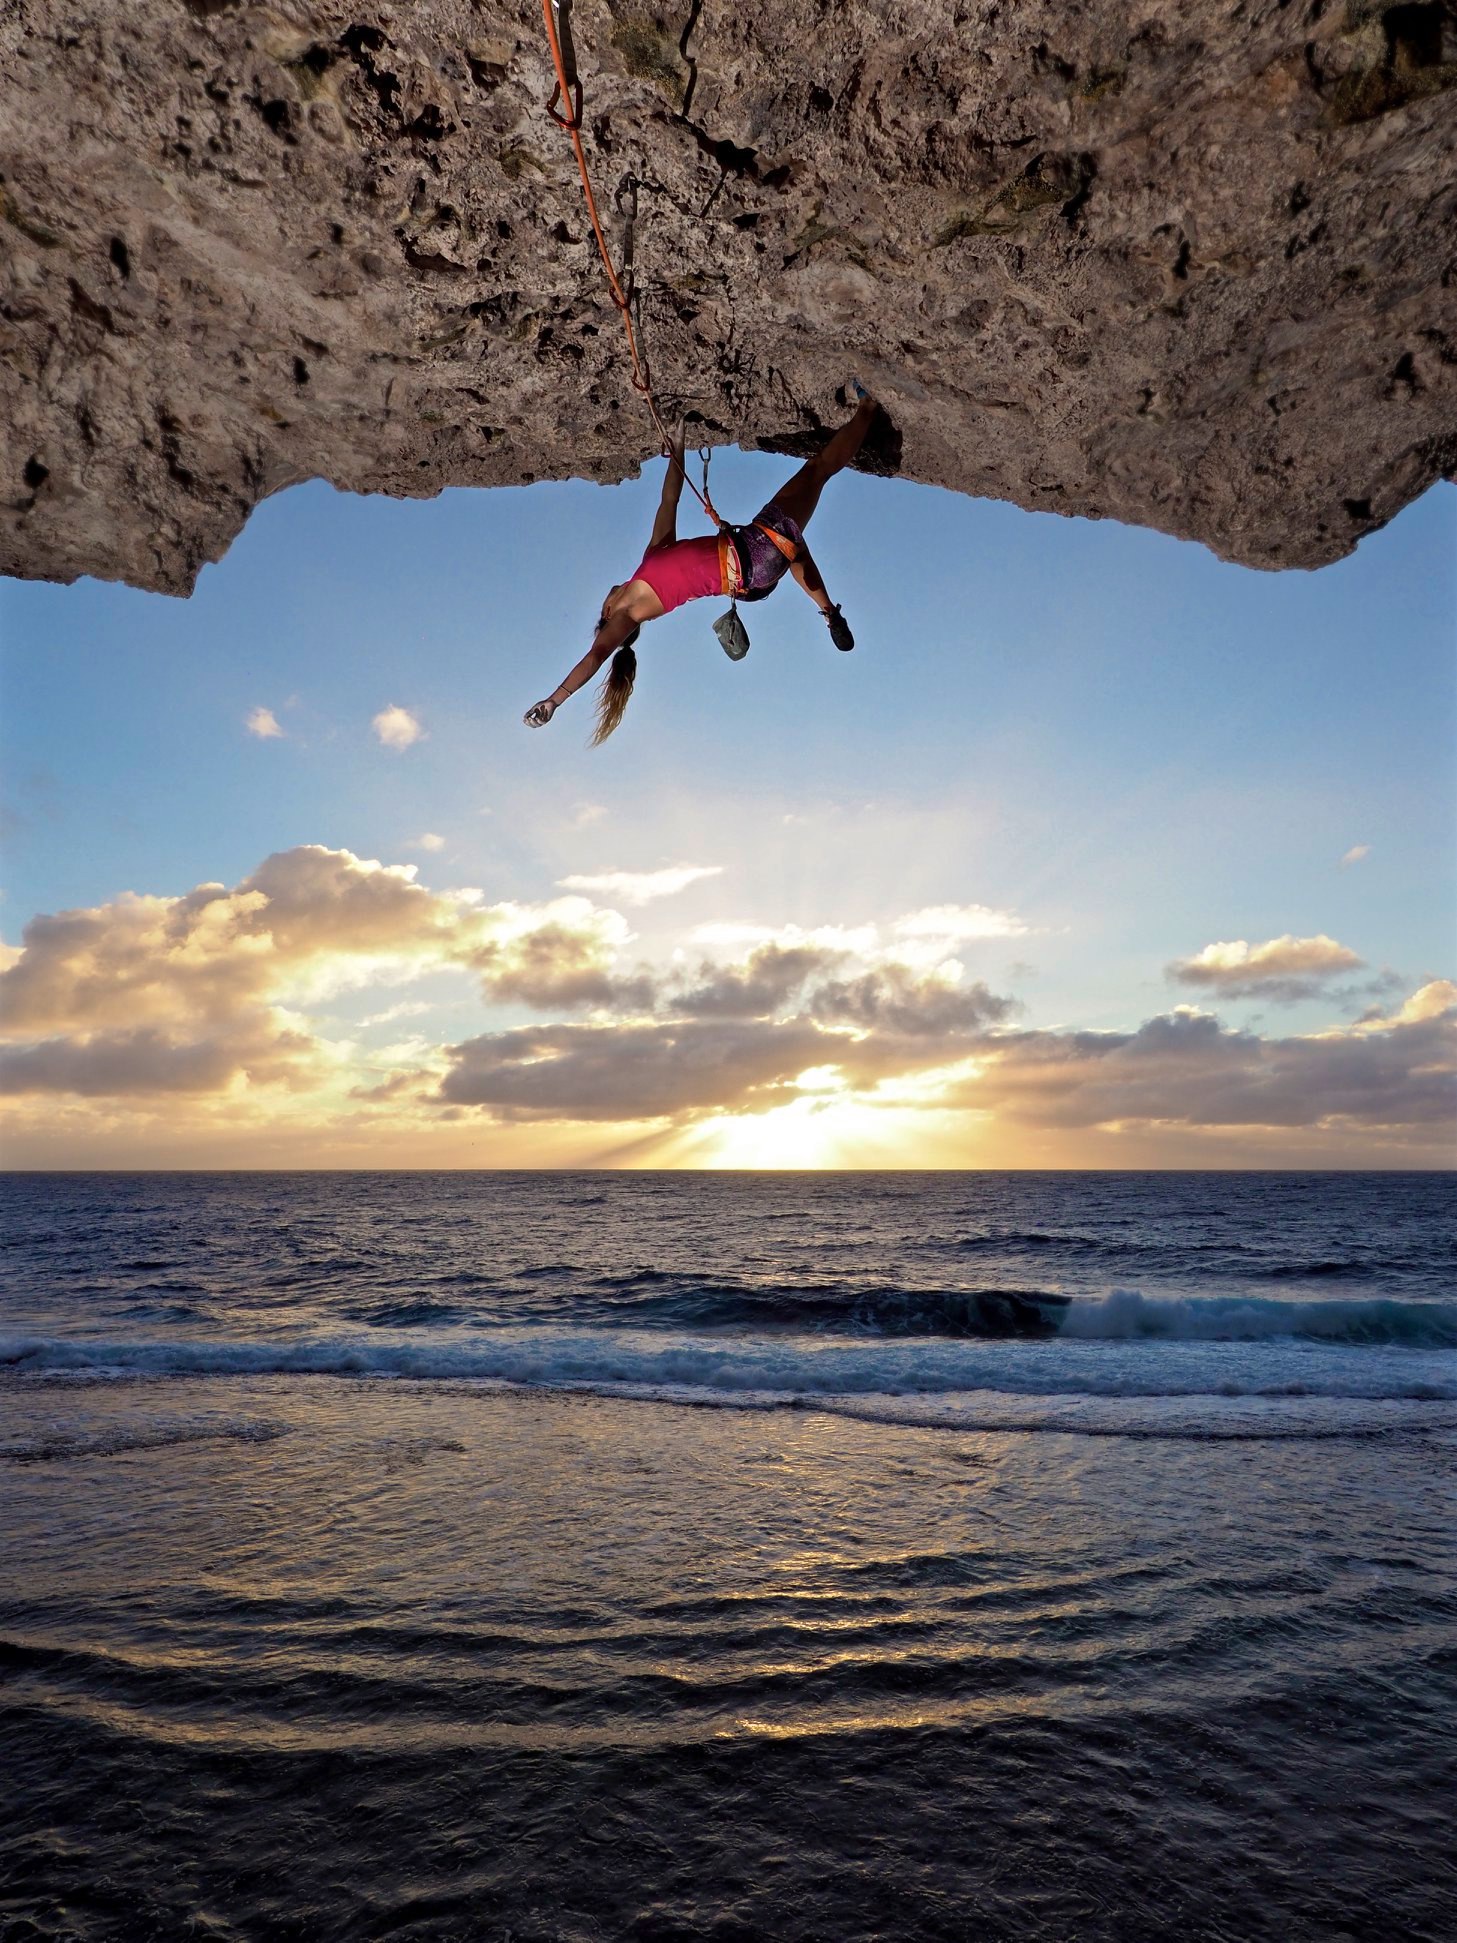 A sport climber rock climbing on the beach at sunset